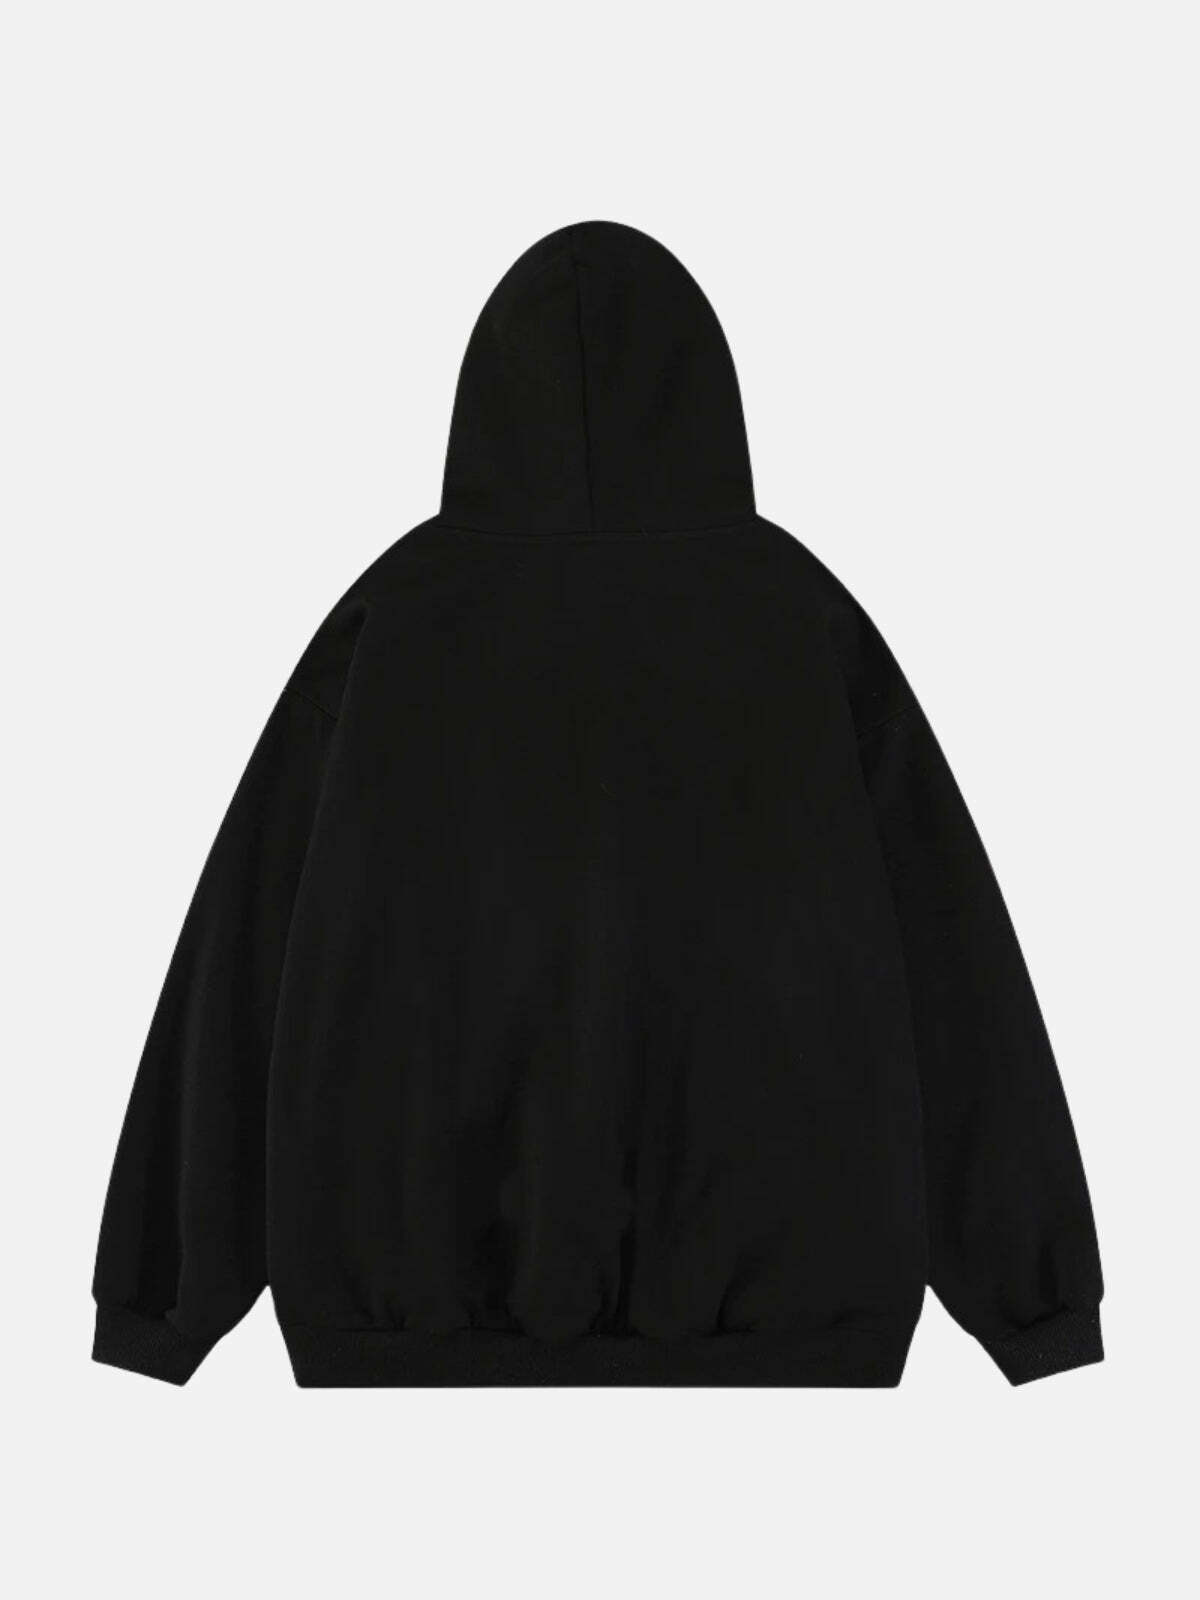 blurry shadow print hoodie edgy & urban streetwear 3402